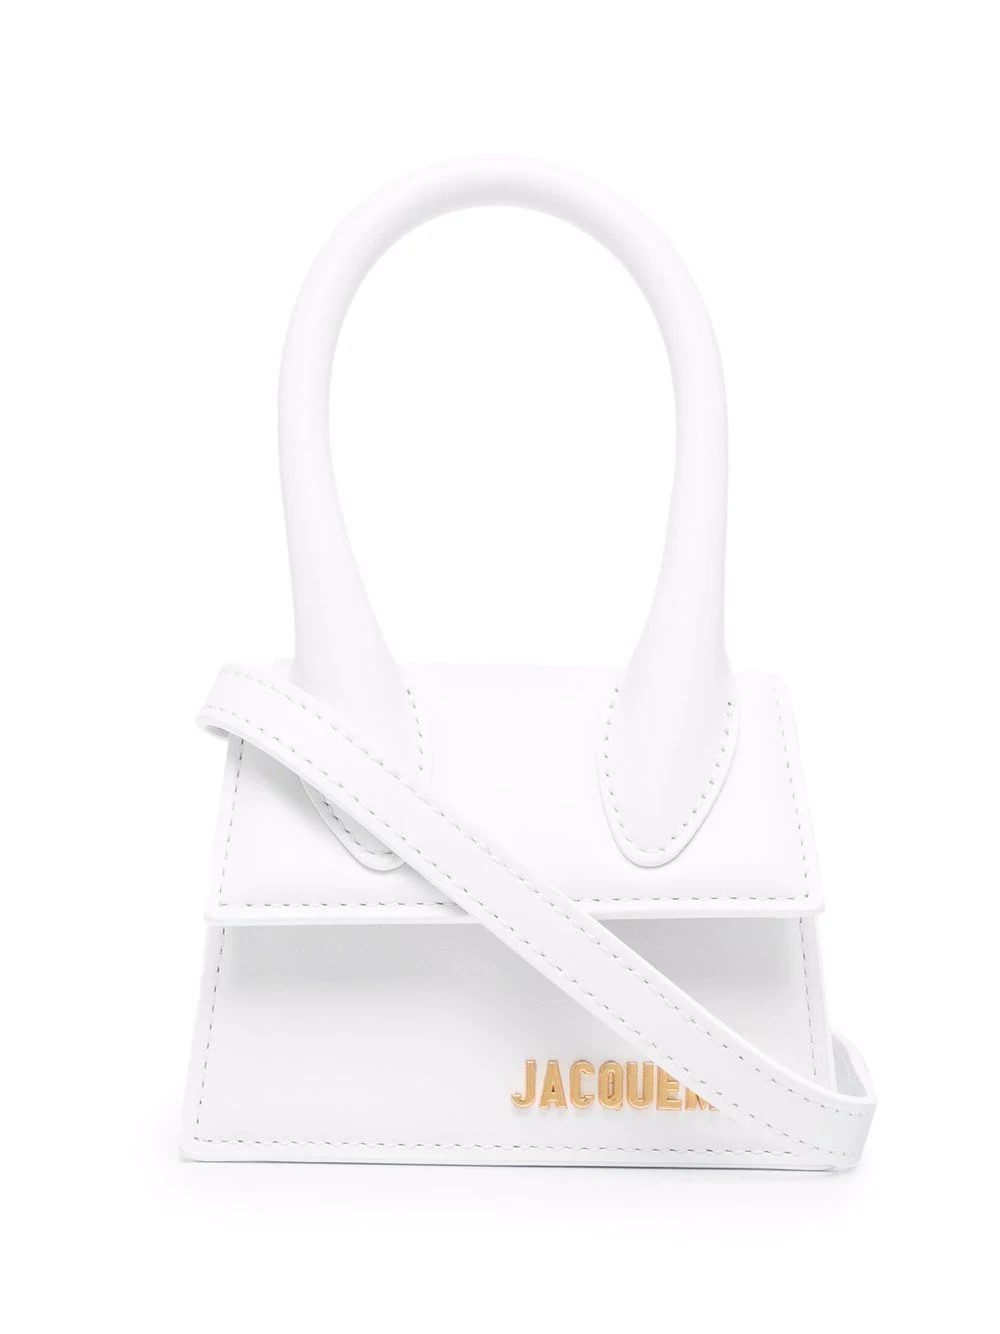 Jacquemus Le Chiquito mini bag - Clothes Rep